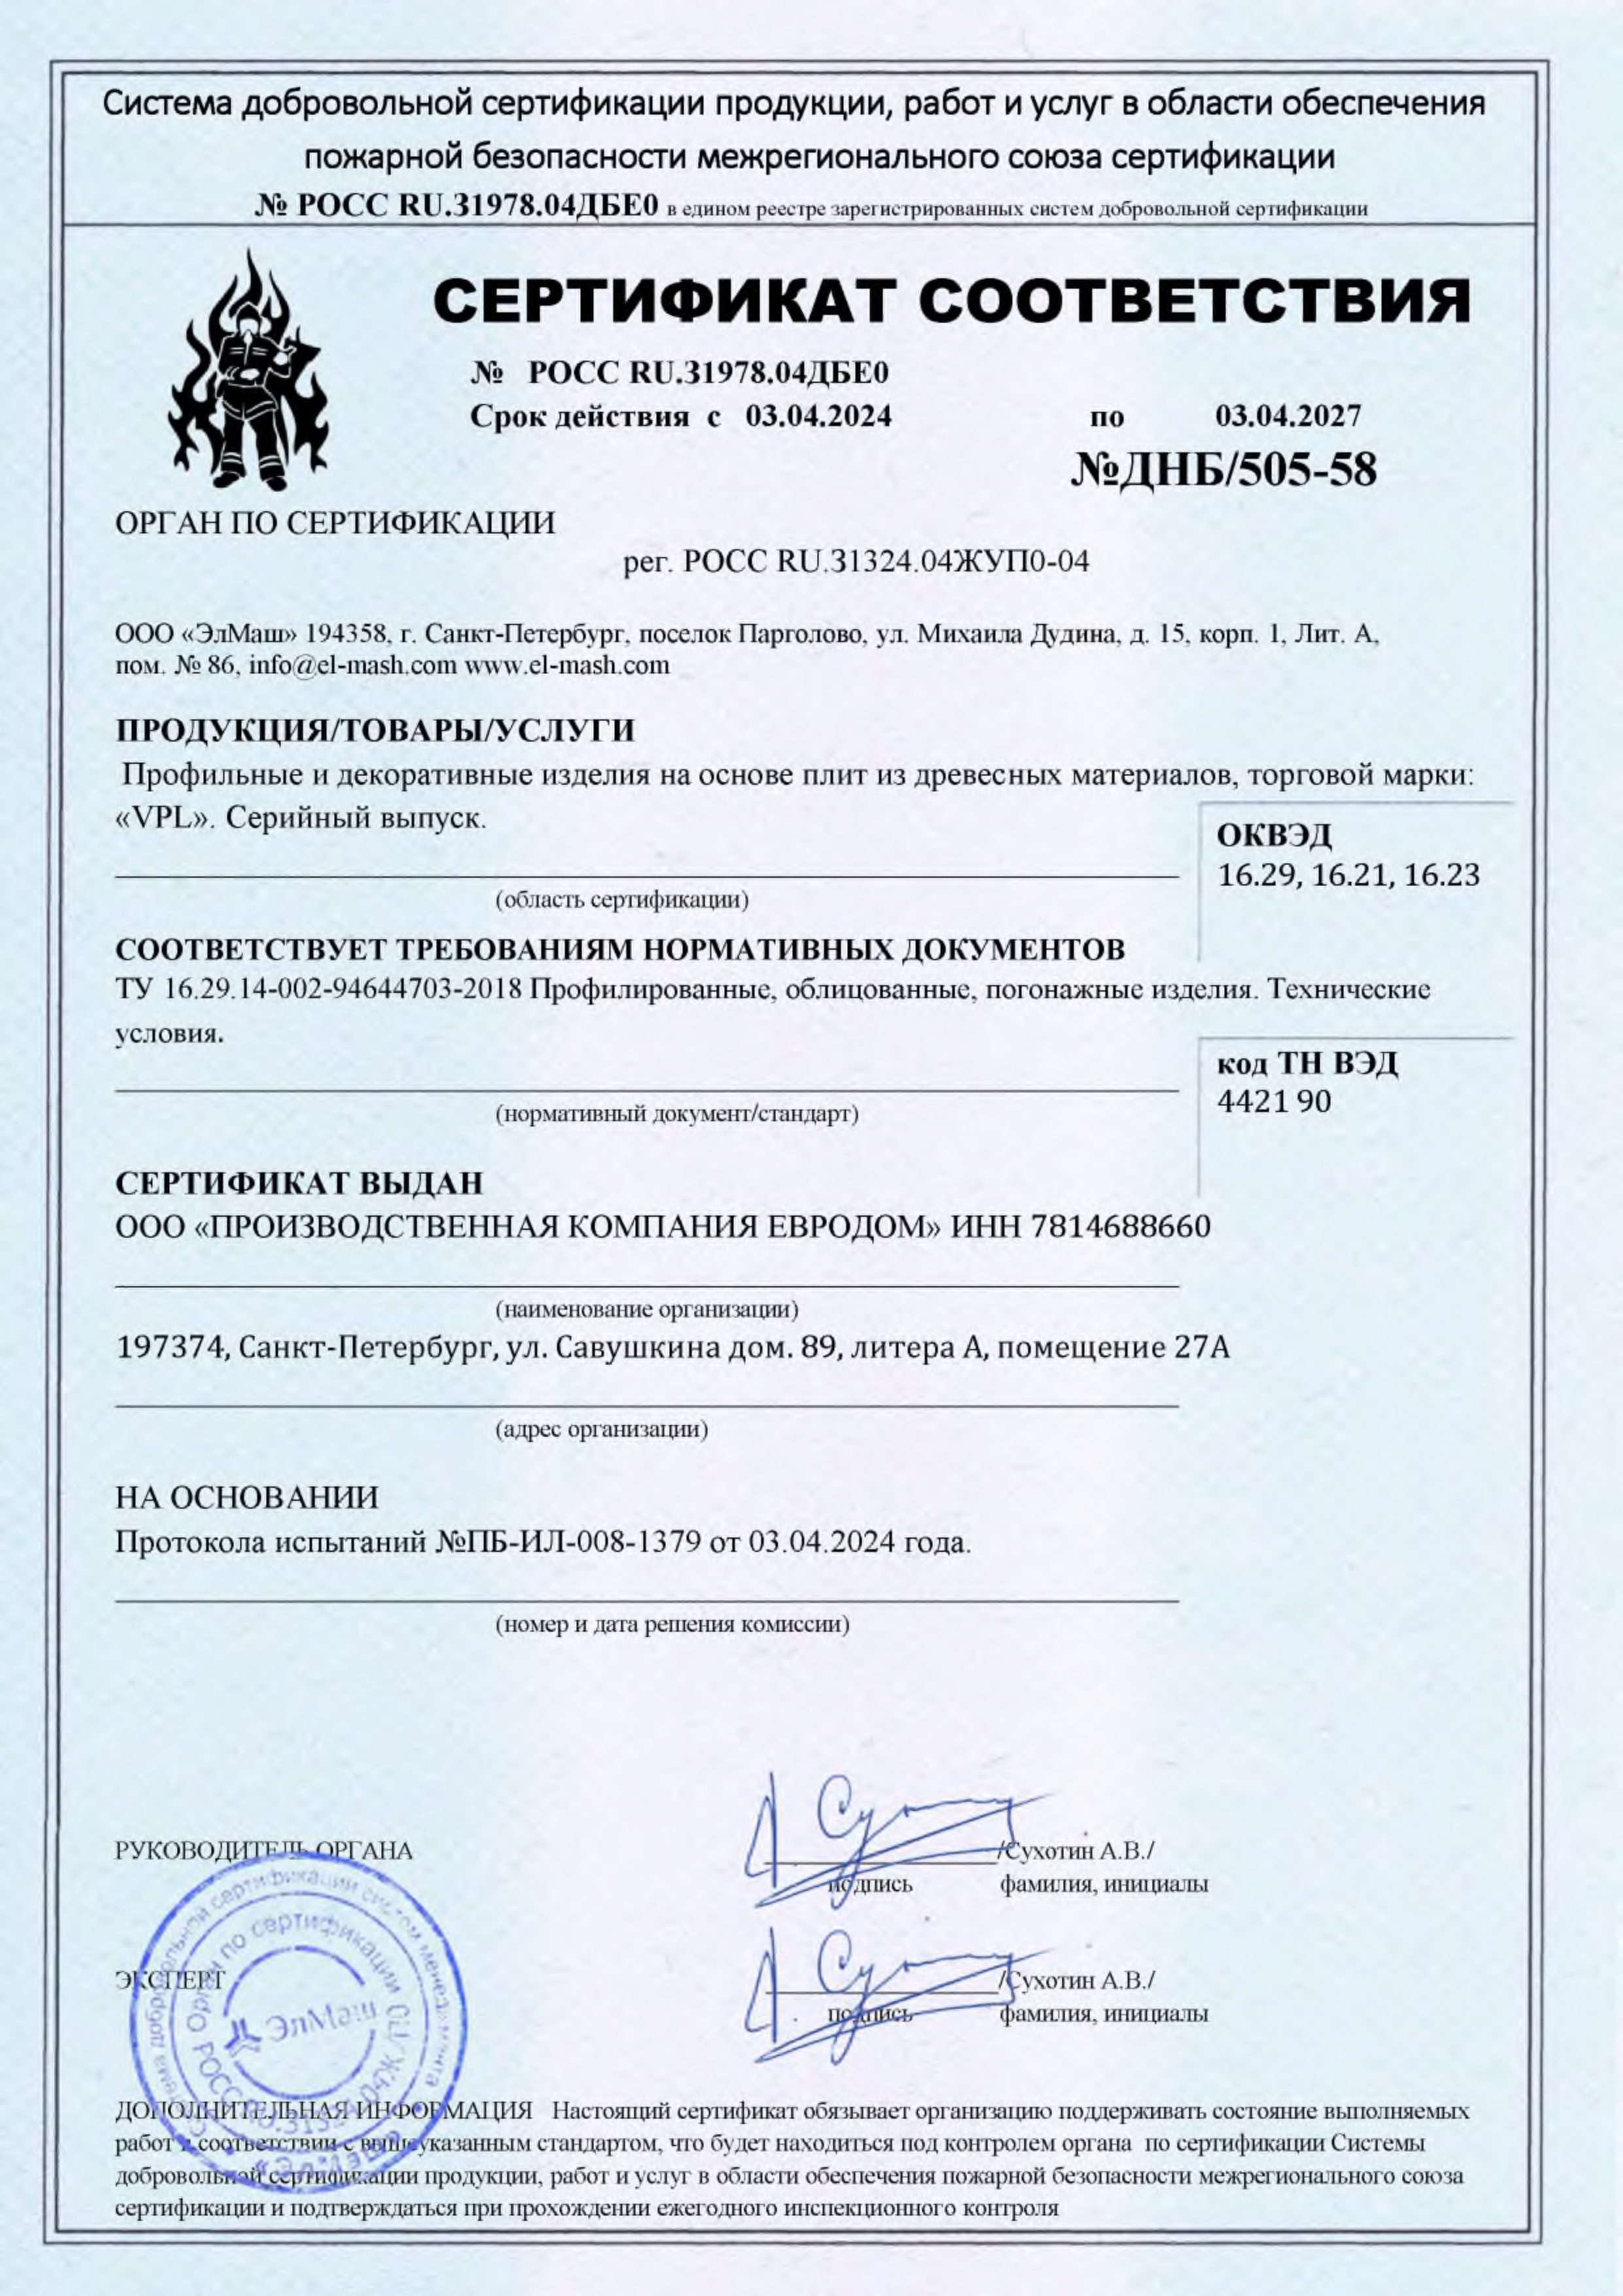 Сертификат соответствия №ДНБ-505-58